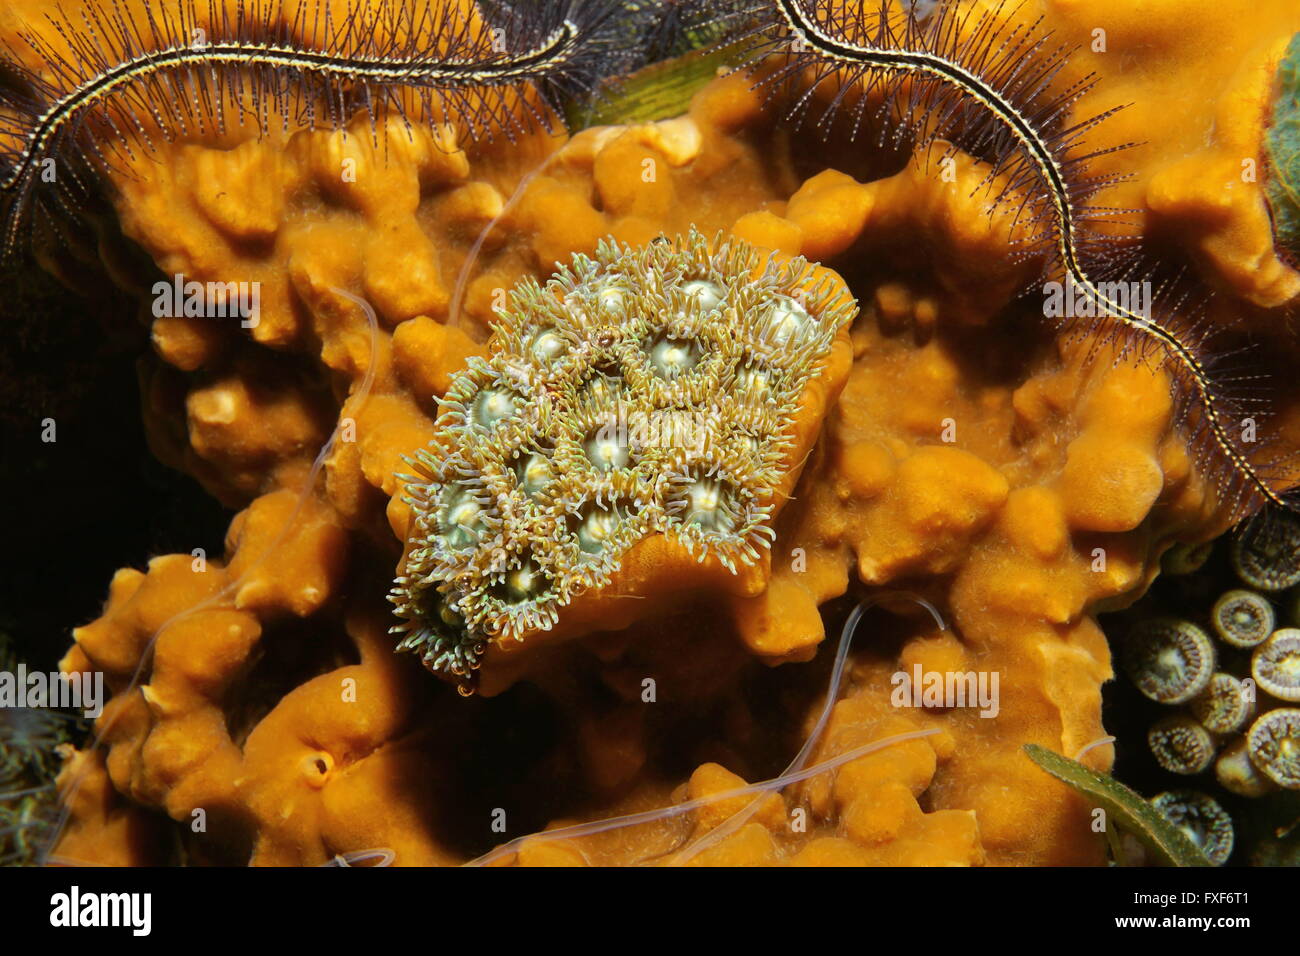 La vie marine, colonie de mat zoanthids entouré par cliona éponge de mer, mer des Caraïbes Banque D'Images